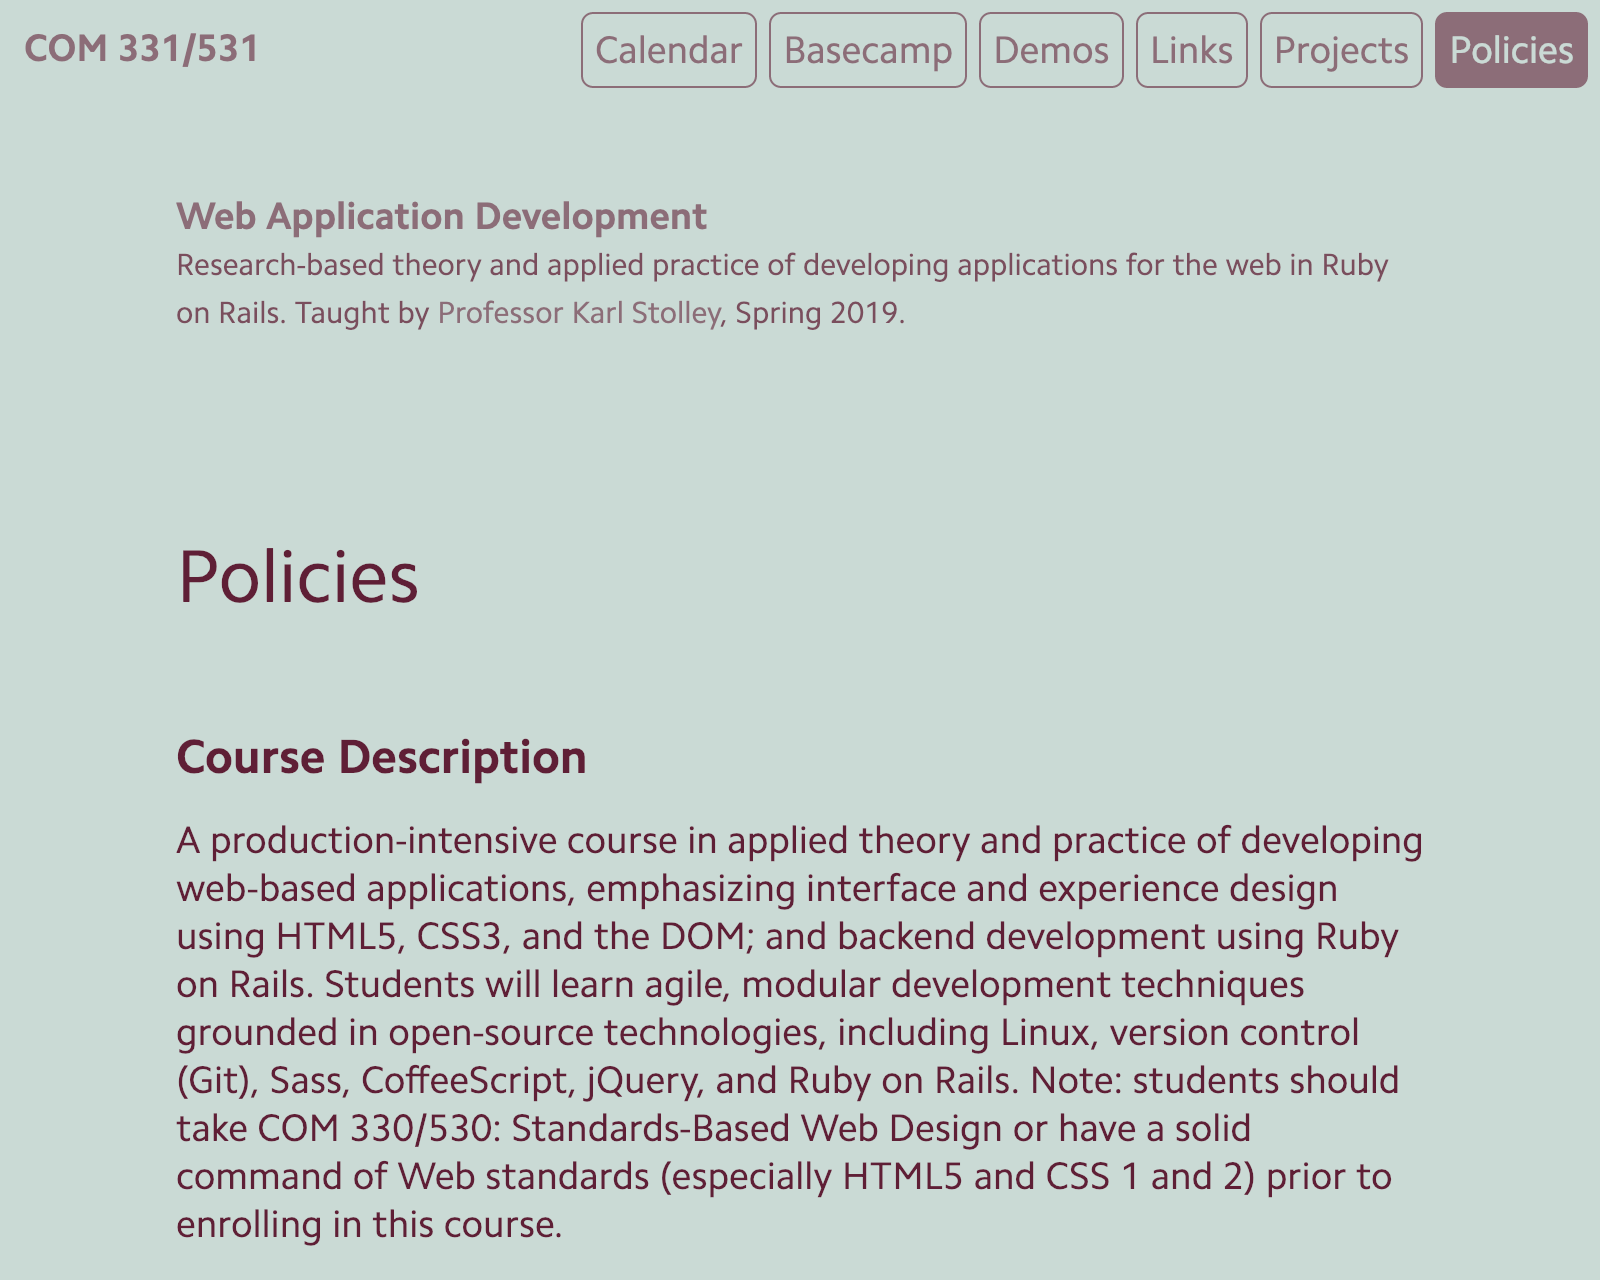 Screenshot of COM 331 course site.